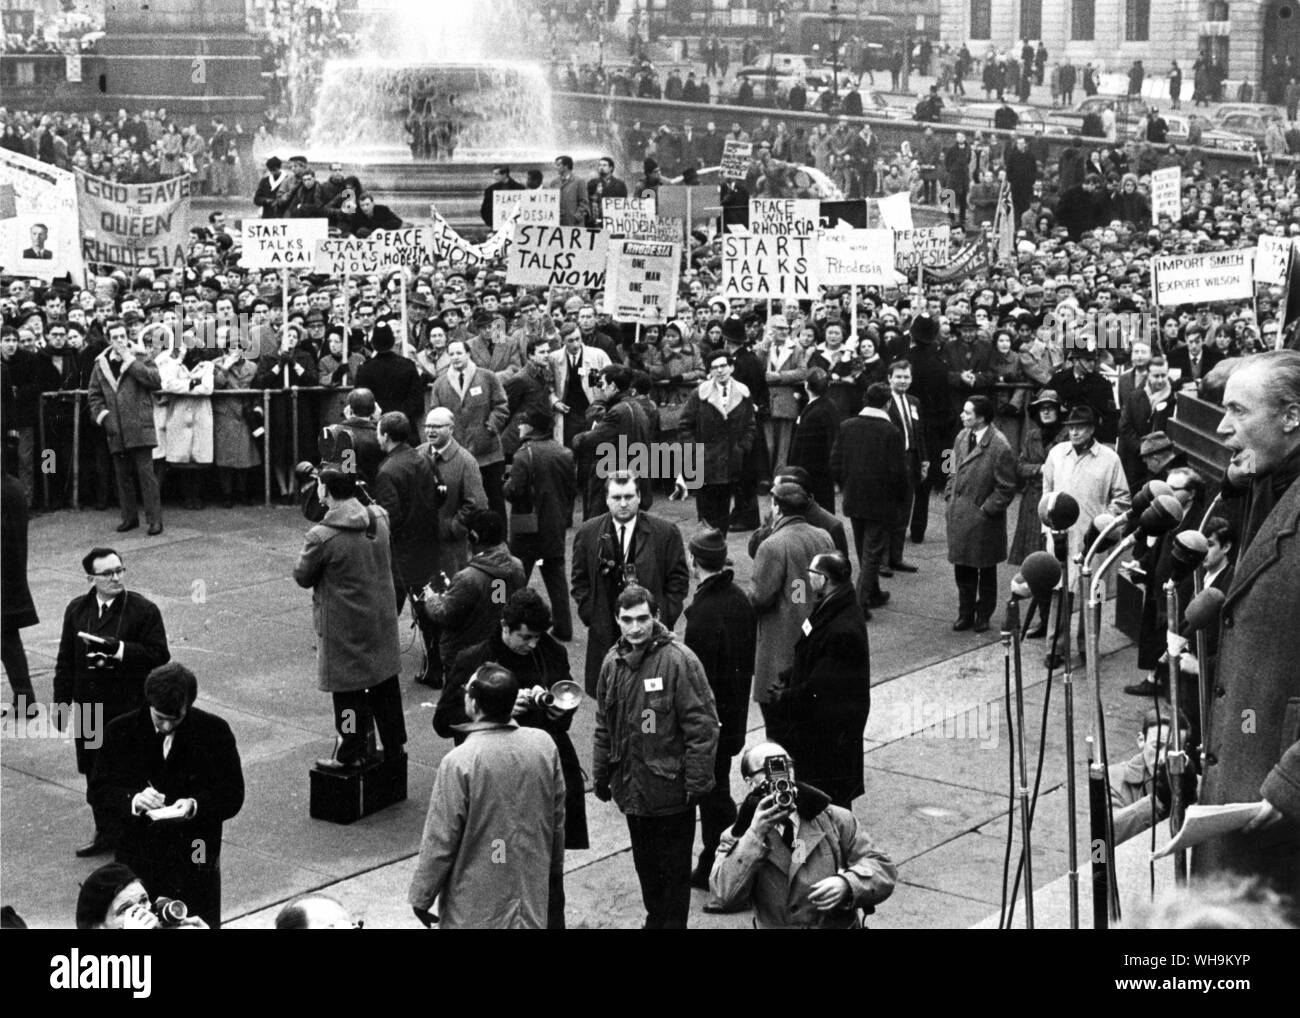 15 Janvier 1967 : Siège de Downing Street. La paix avec la Rhodésie rally appelé par M. Duncan Sandys, vu sur le rallye, et d'autres députés conservateurs ont éclaté avec violence à Londres. La police se sont battus pour garder la foule de Downing Street. Banque D'Images